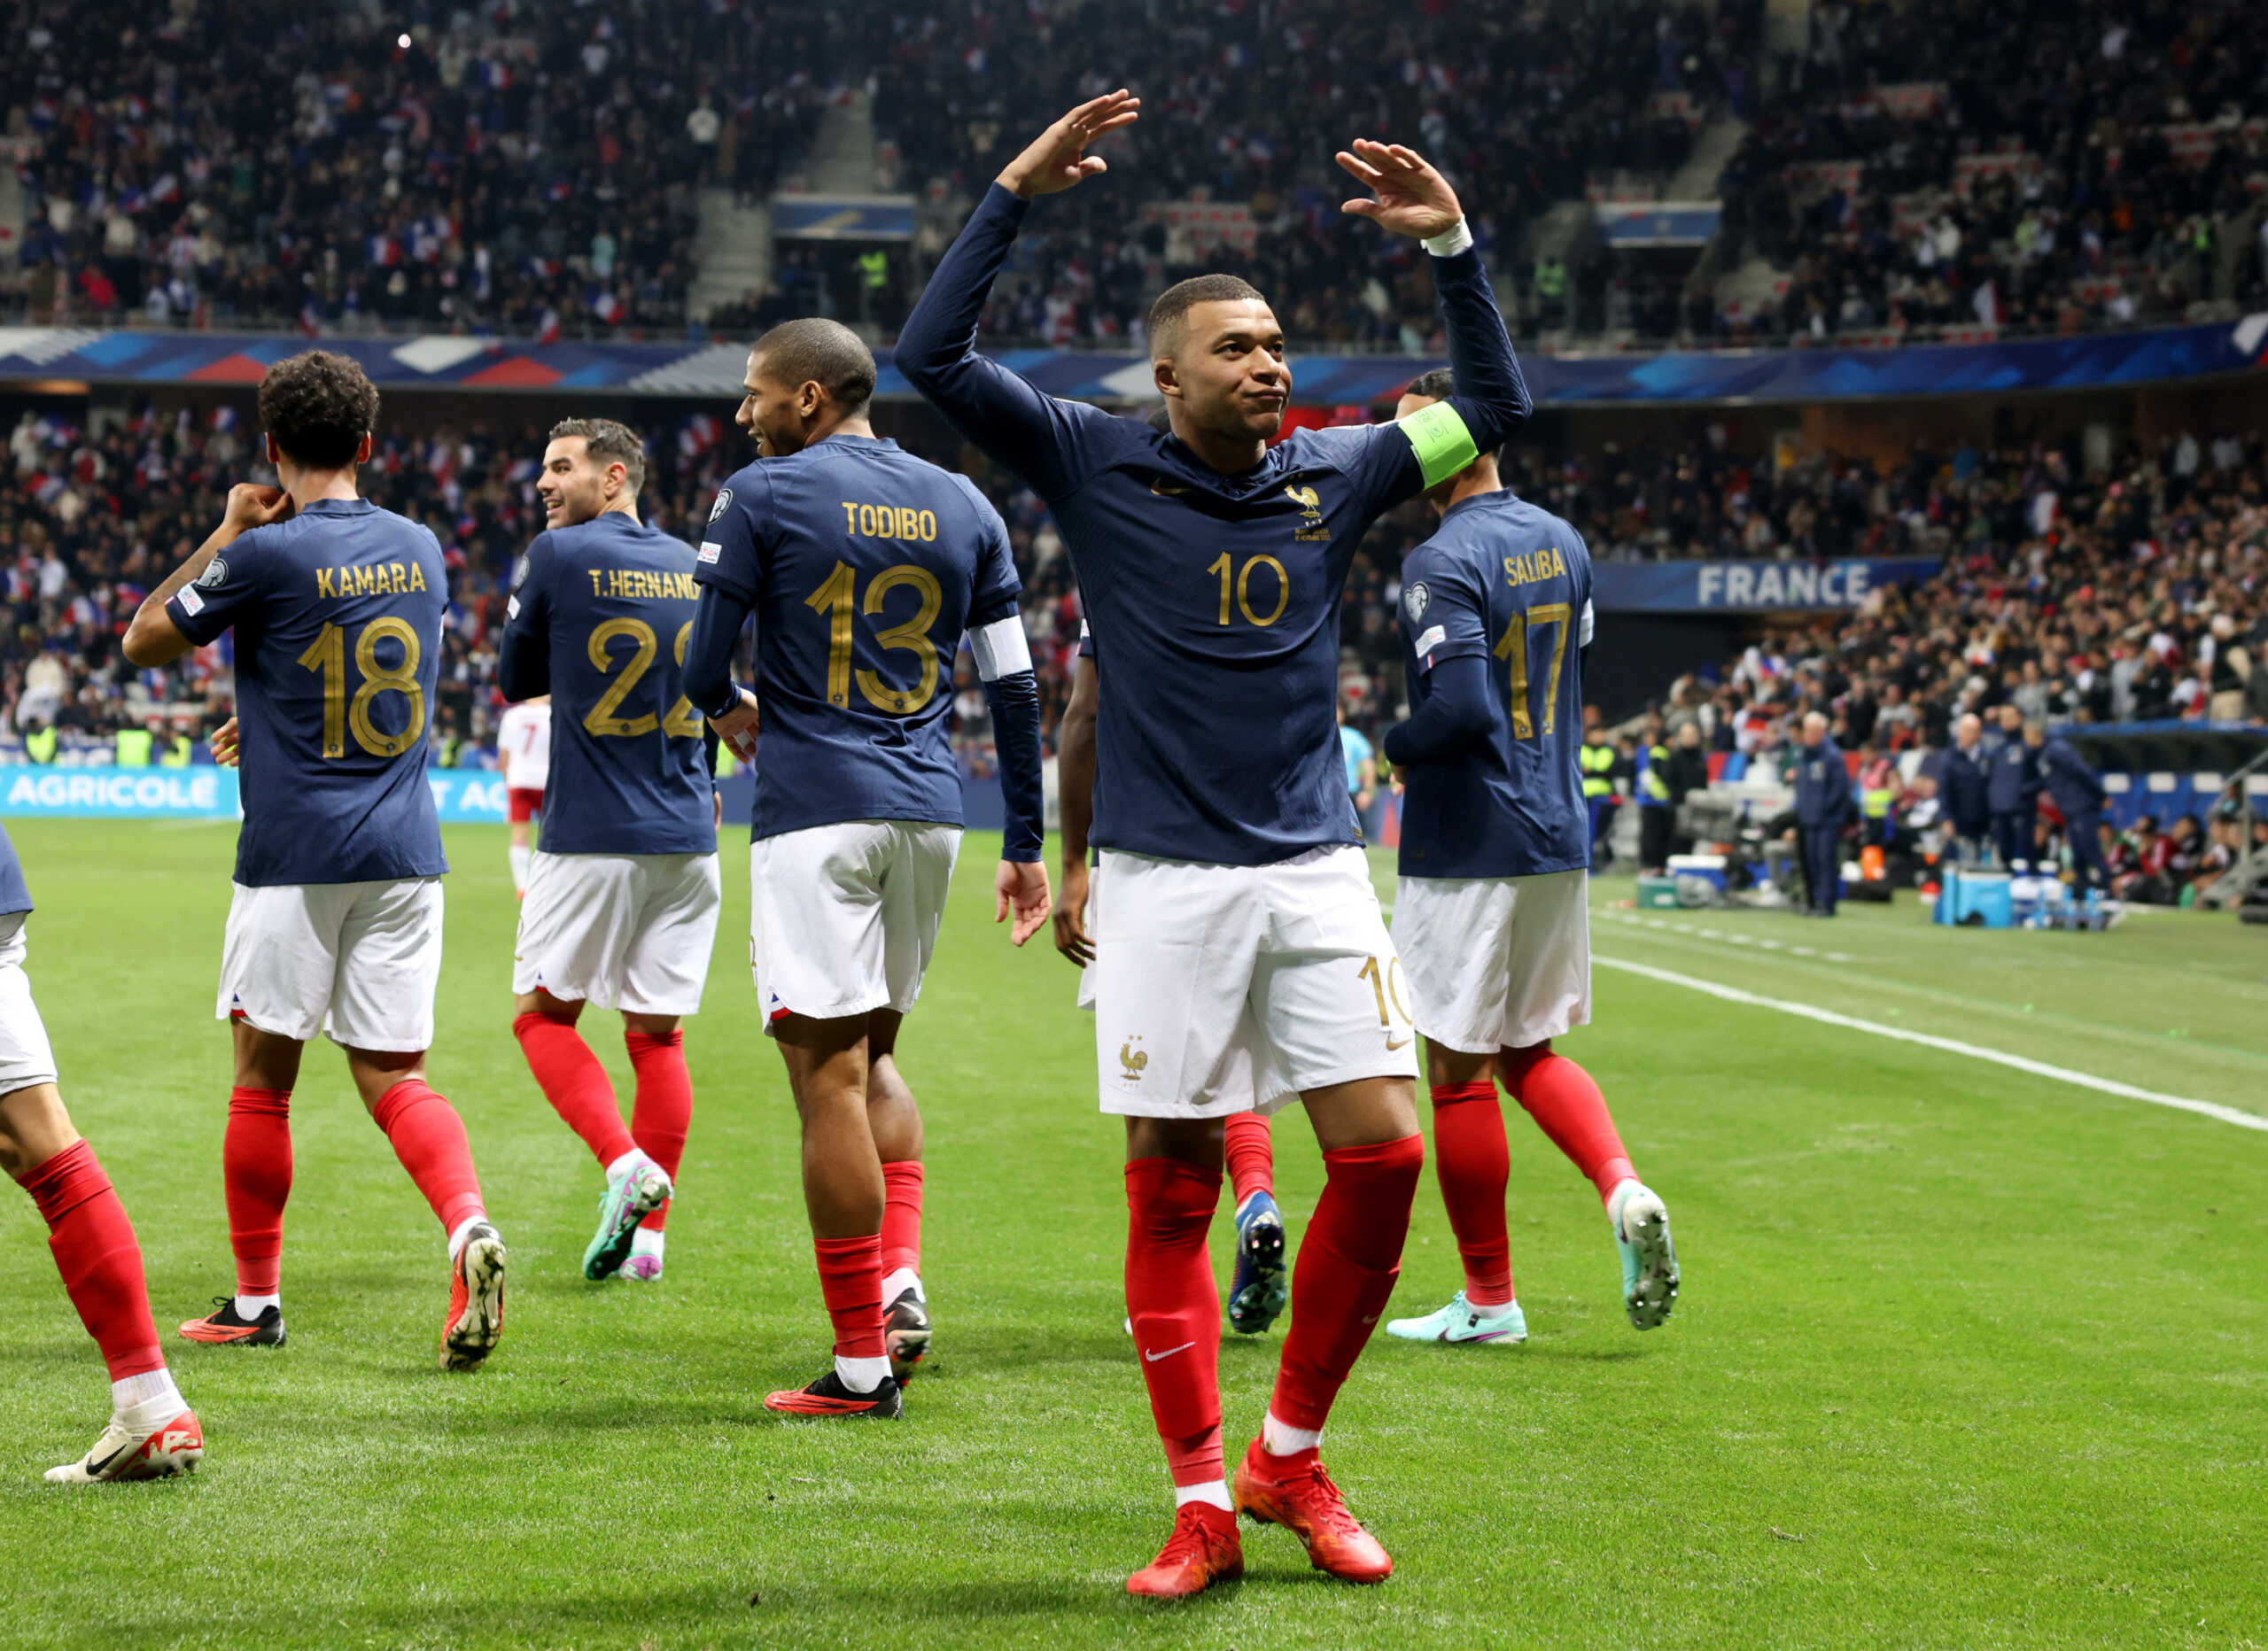 La France a battu Gibraltar 14-0, s’est qualifiée pour les Pays-Bas et a envoyé la Grèce en barrages